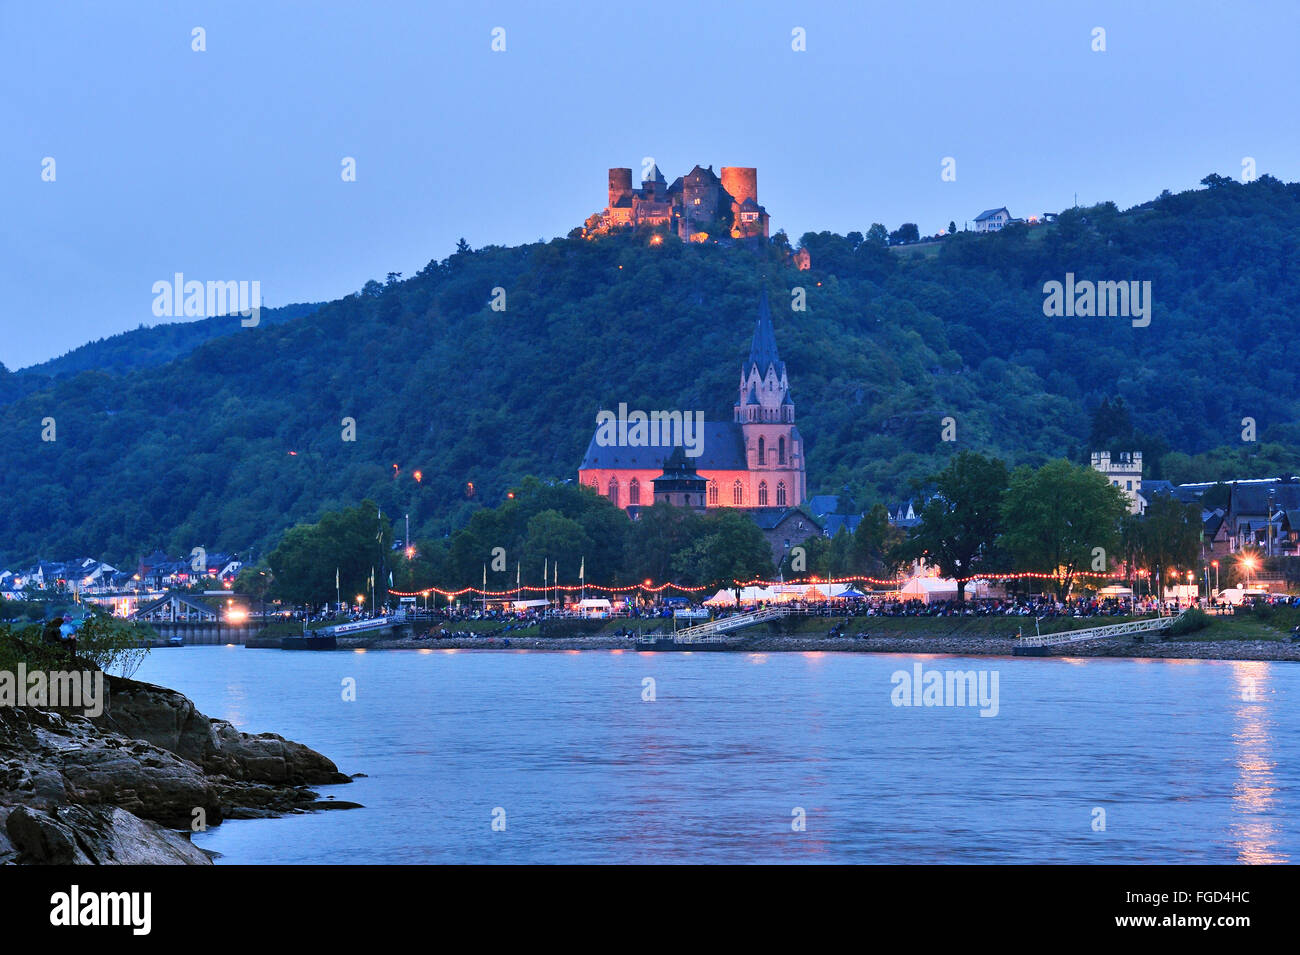 Città illuminata Oberwesel e Castello di Schönburg al festival di Rhein in Flammen, Valle del Reno superiore e centrale, Germania Foto Stock